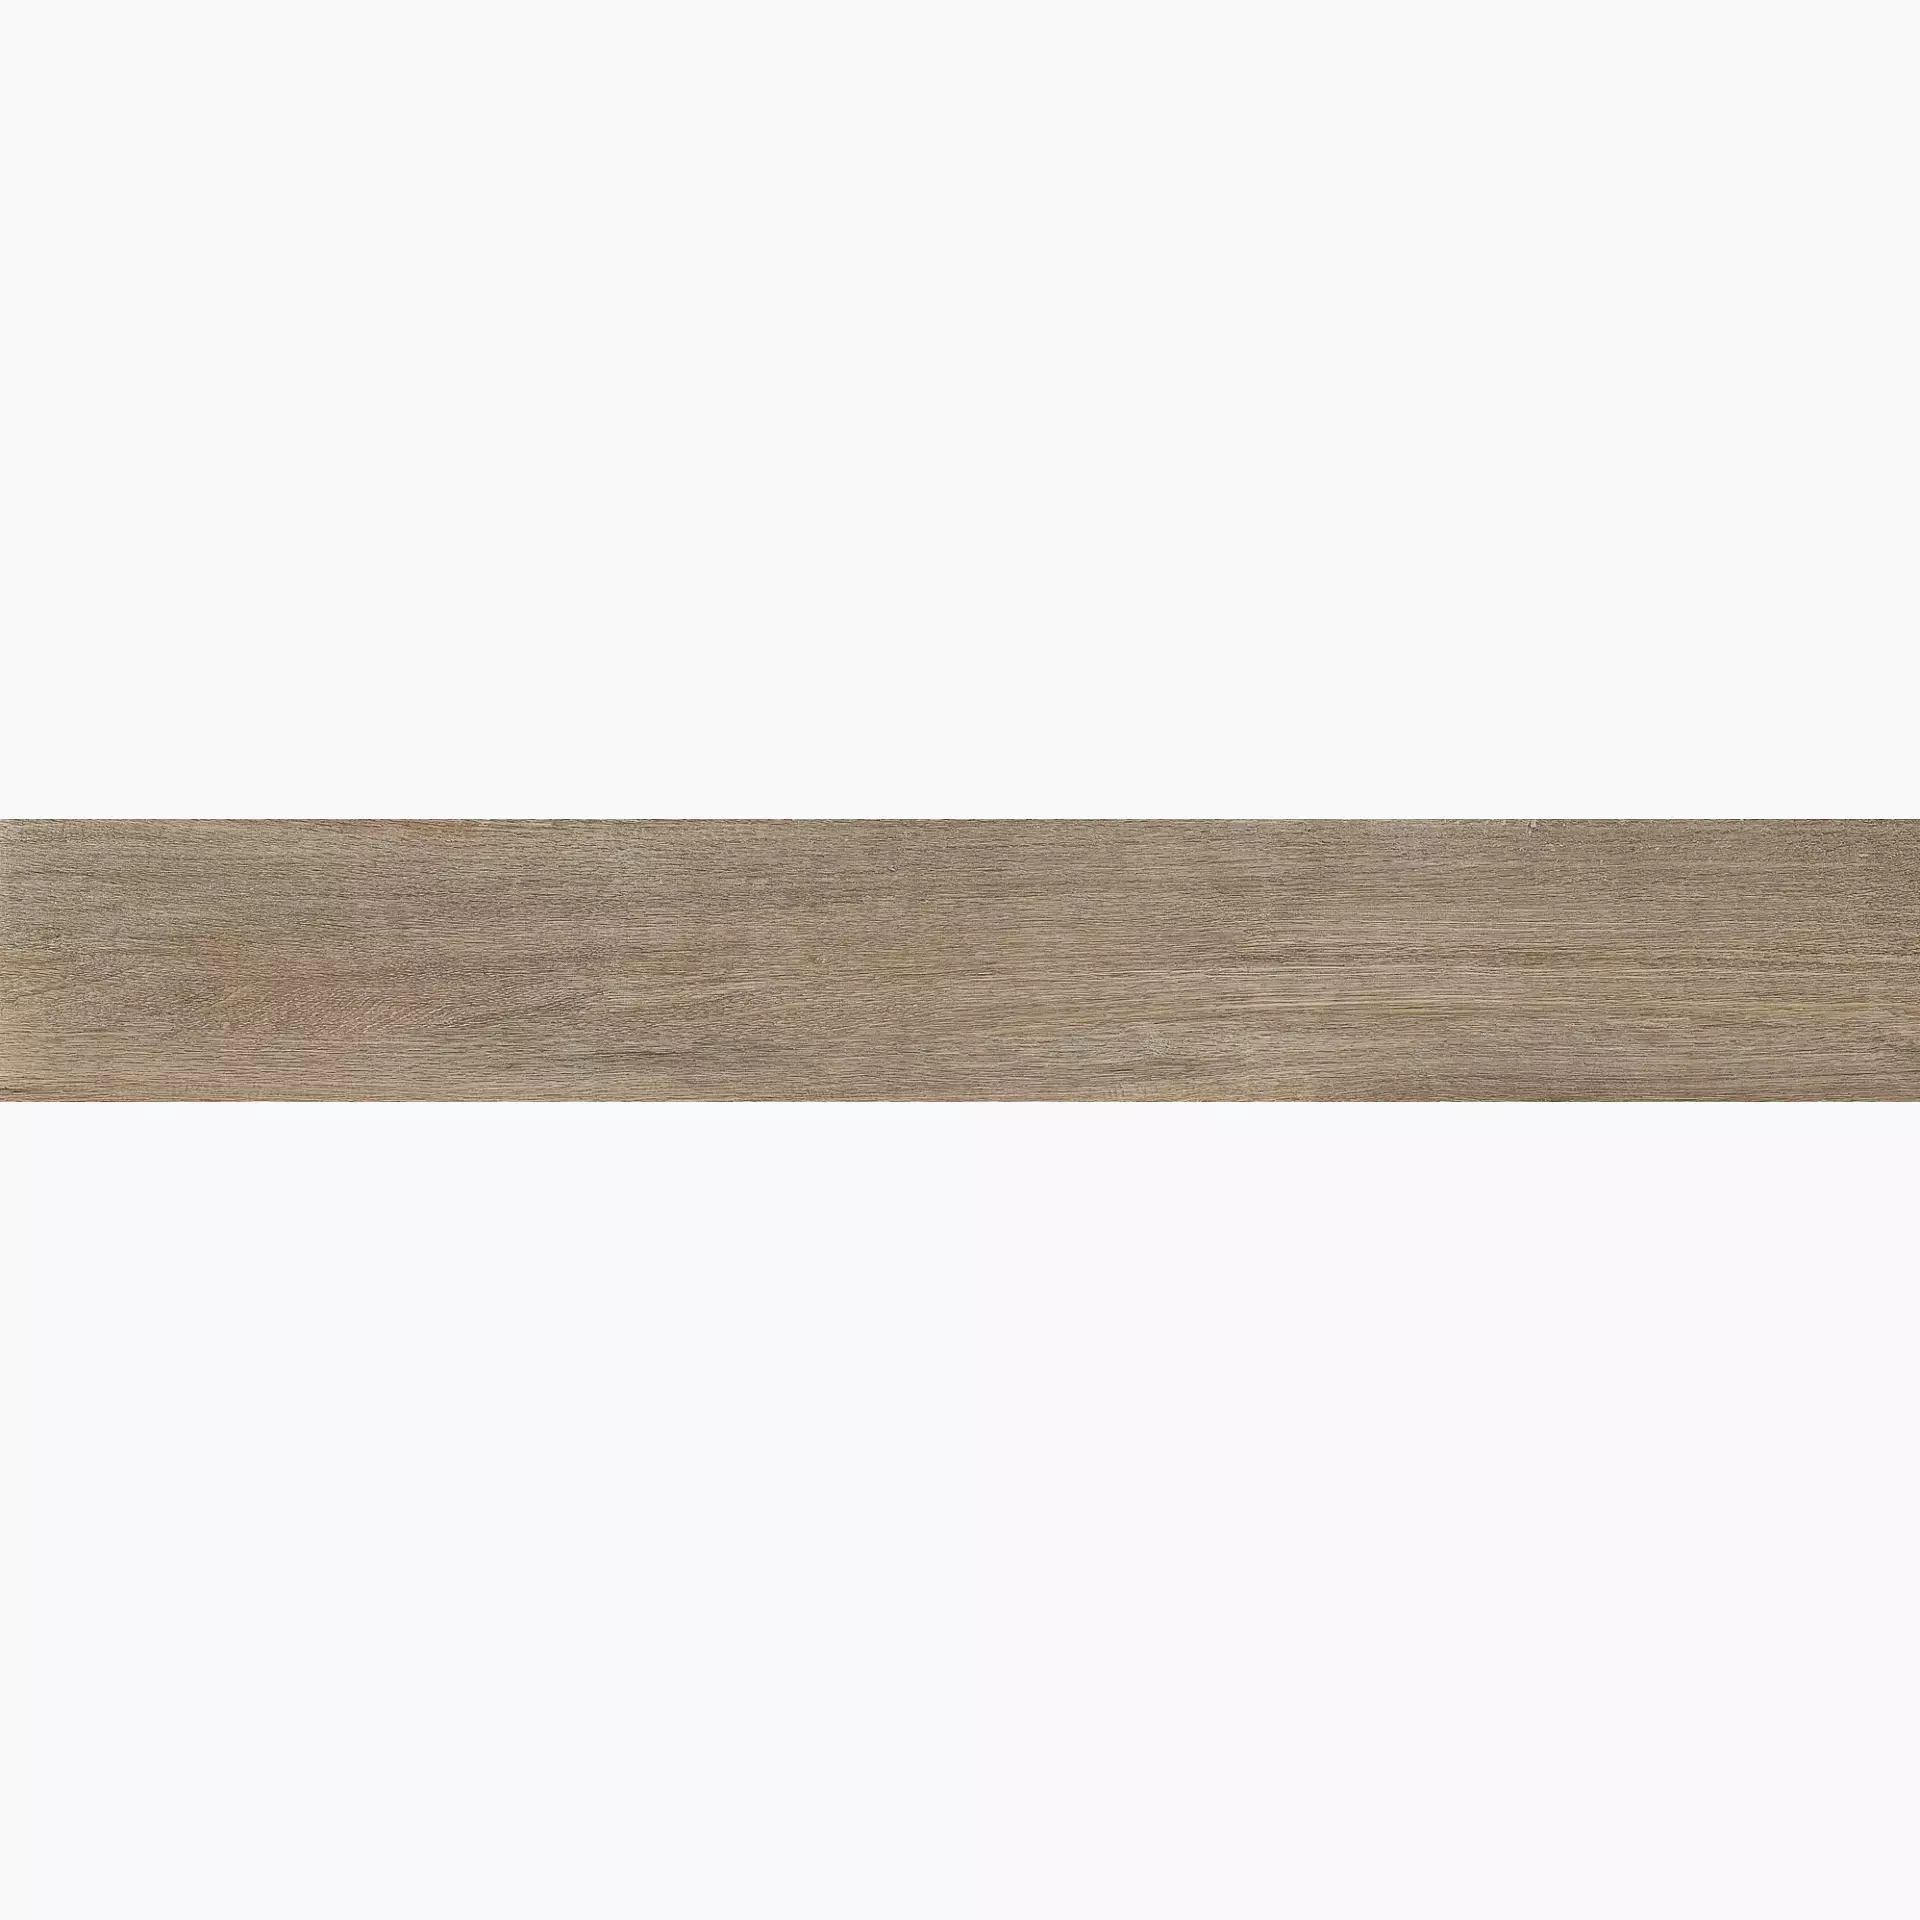 Florim Selection Oak Amber Oak Naturale – Matt Amber Oak 737650 matt natur 26,5x180cm rektifiziert 9mm